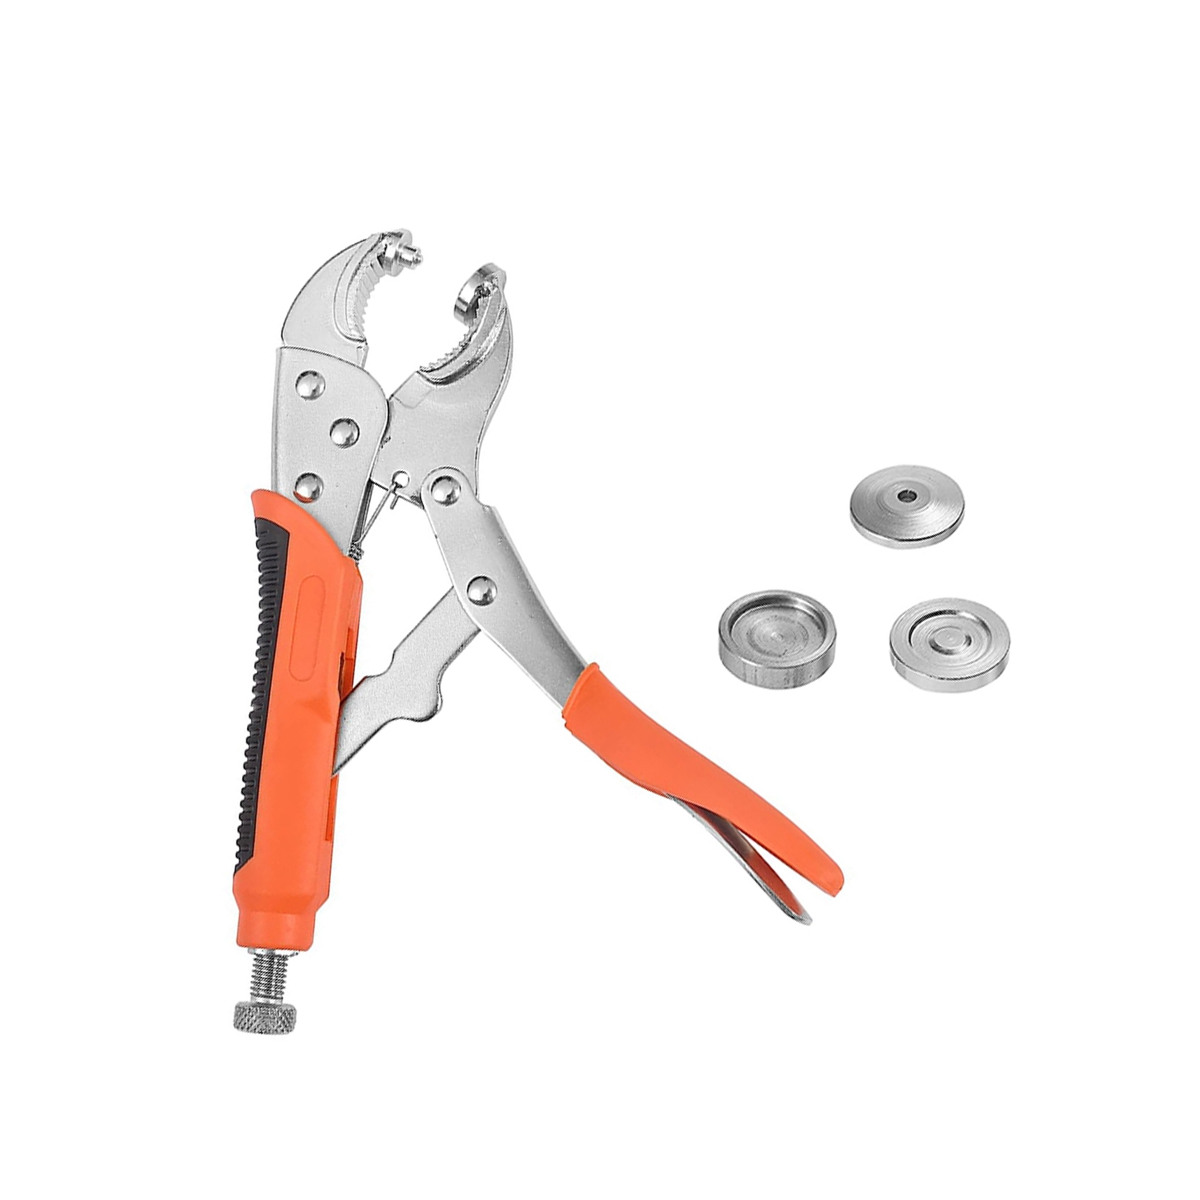 Kit de herramientas de alicates de cierre a presión de alta resistencia  para sujetar broches de presión, reemplazo de broches de metal, cubierta de